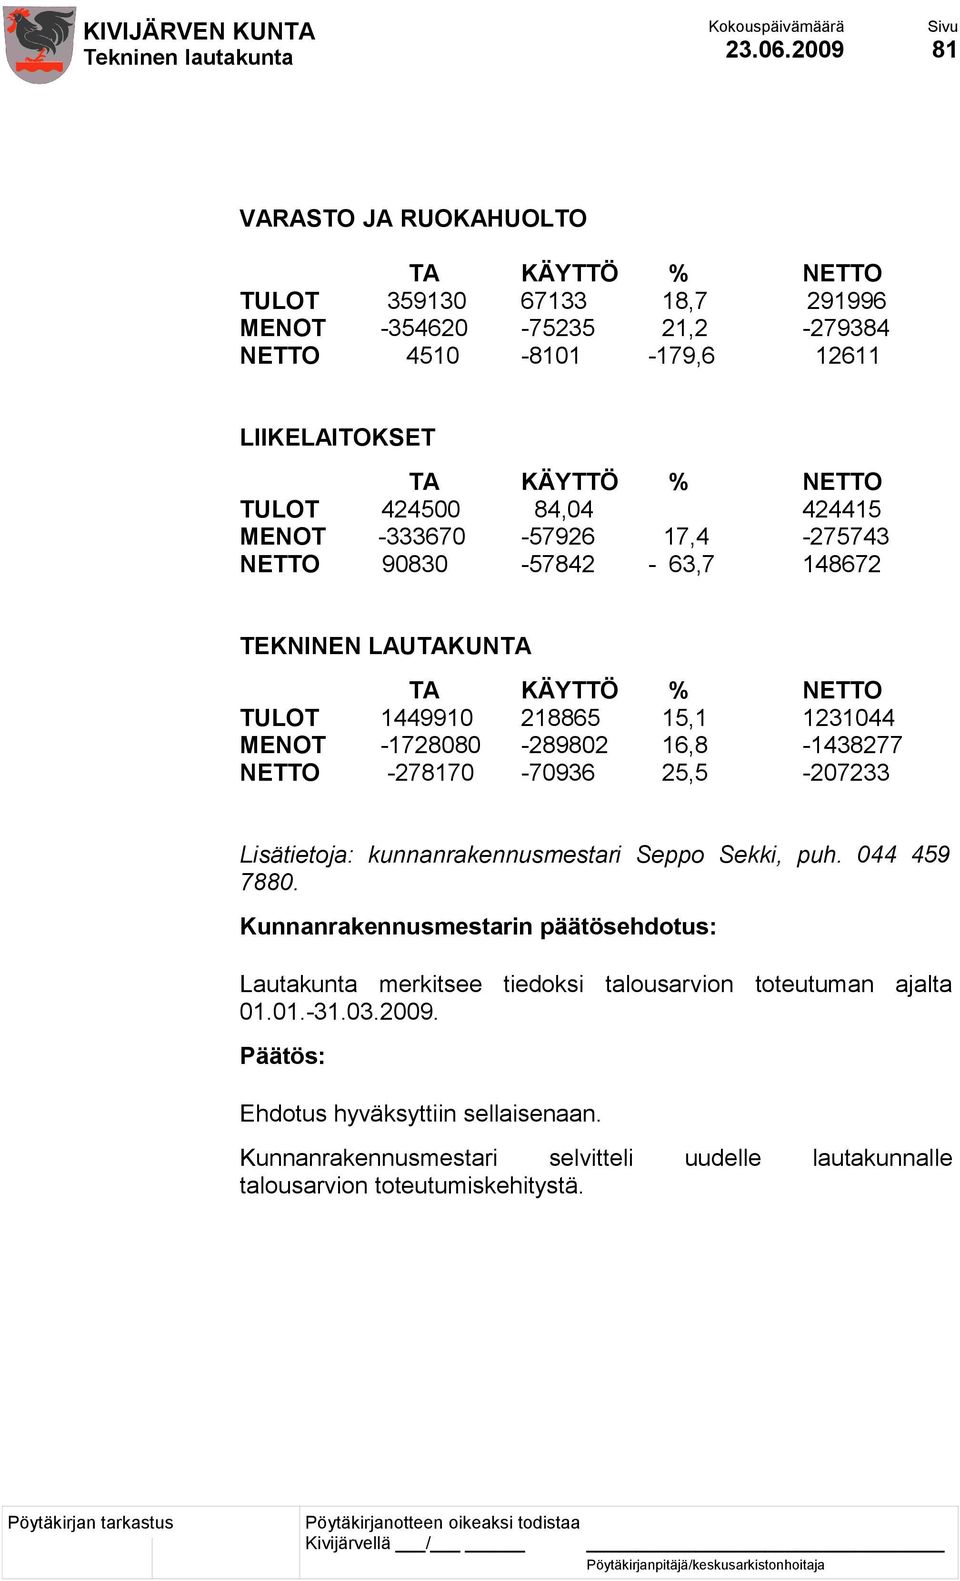 16,8-1438277 NETTO -278170-70936 25,5-207233 Lisätietoja: kunnanrakennusmestari Seppo Sekki, puh. 044 459 7880.